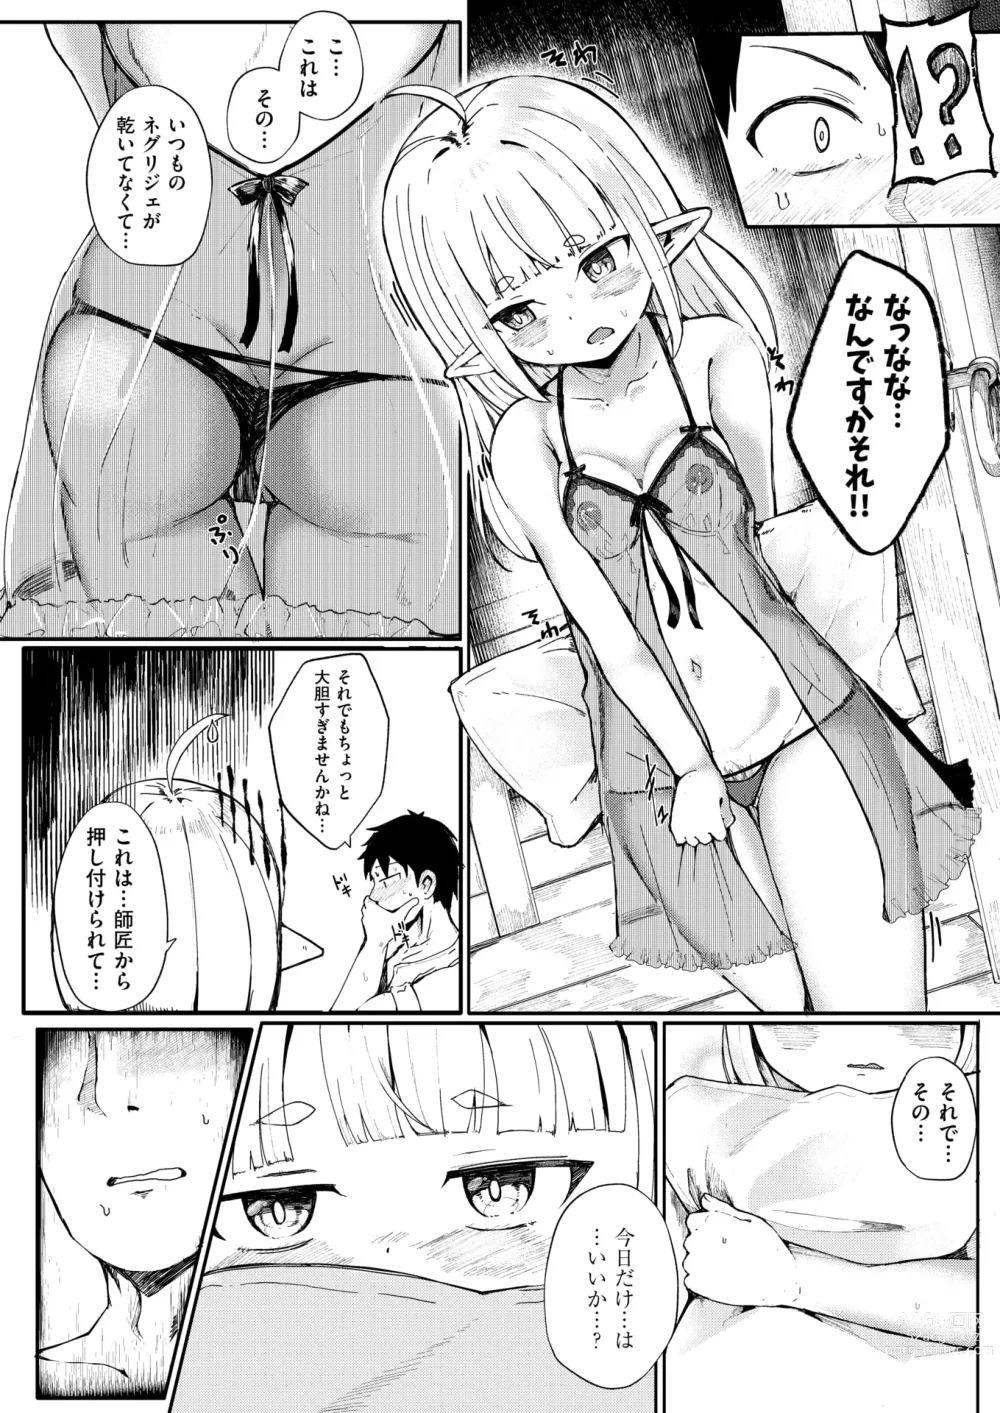 Page 10 of manga Kono Kokoro Oya Shirazu